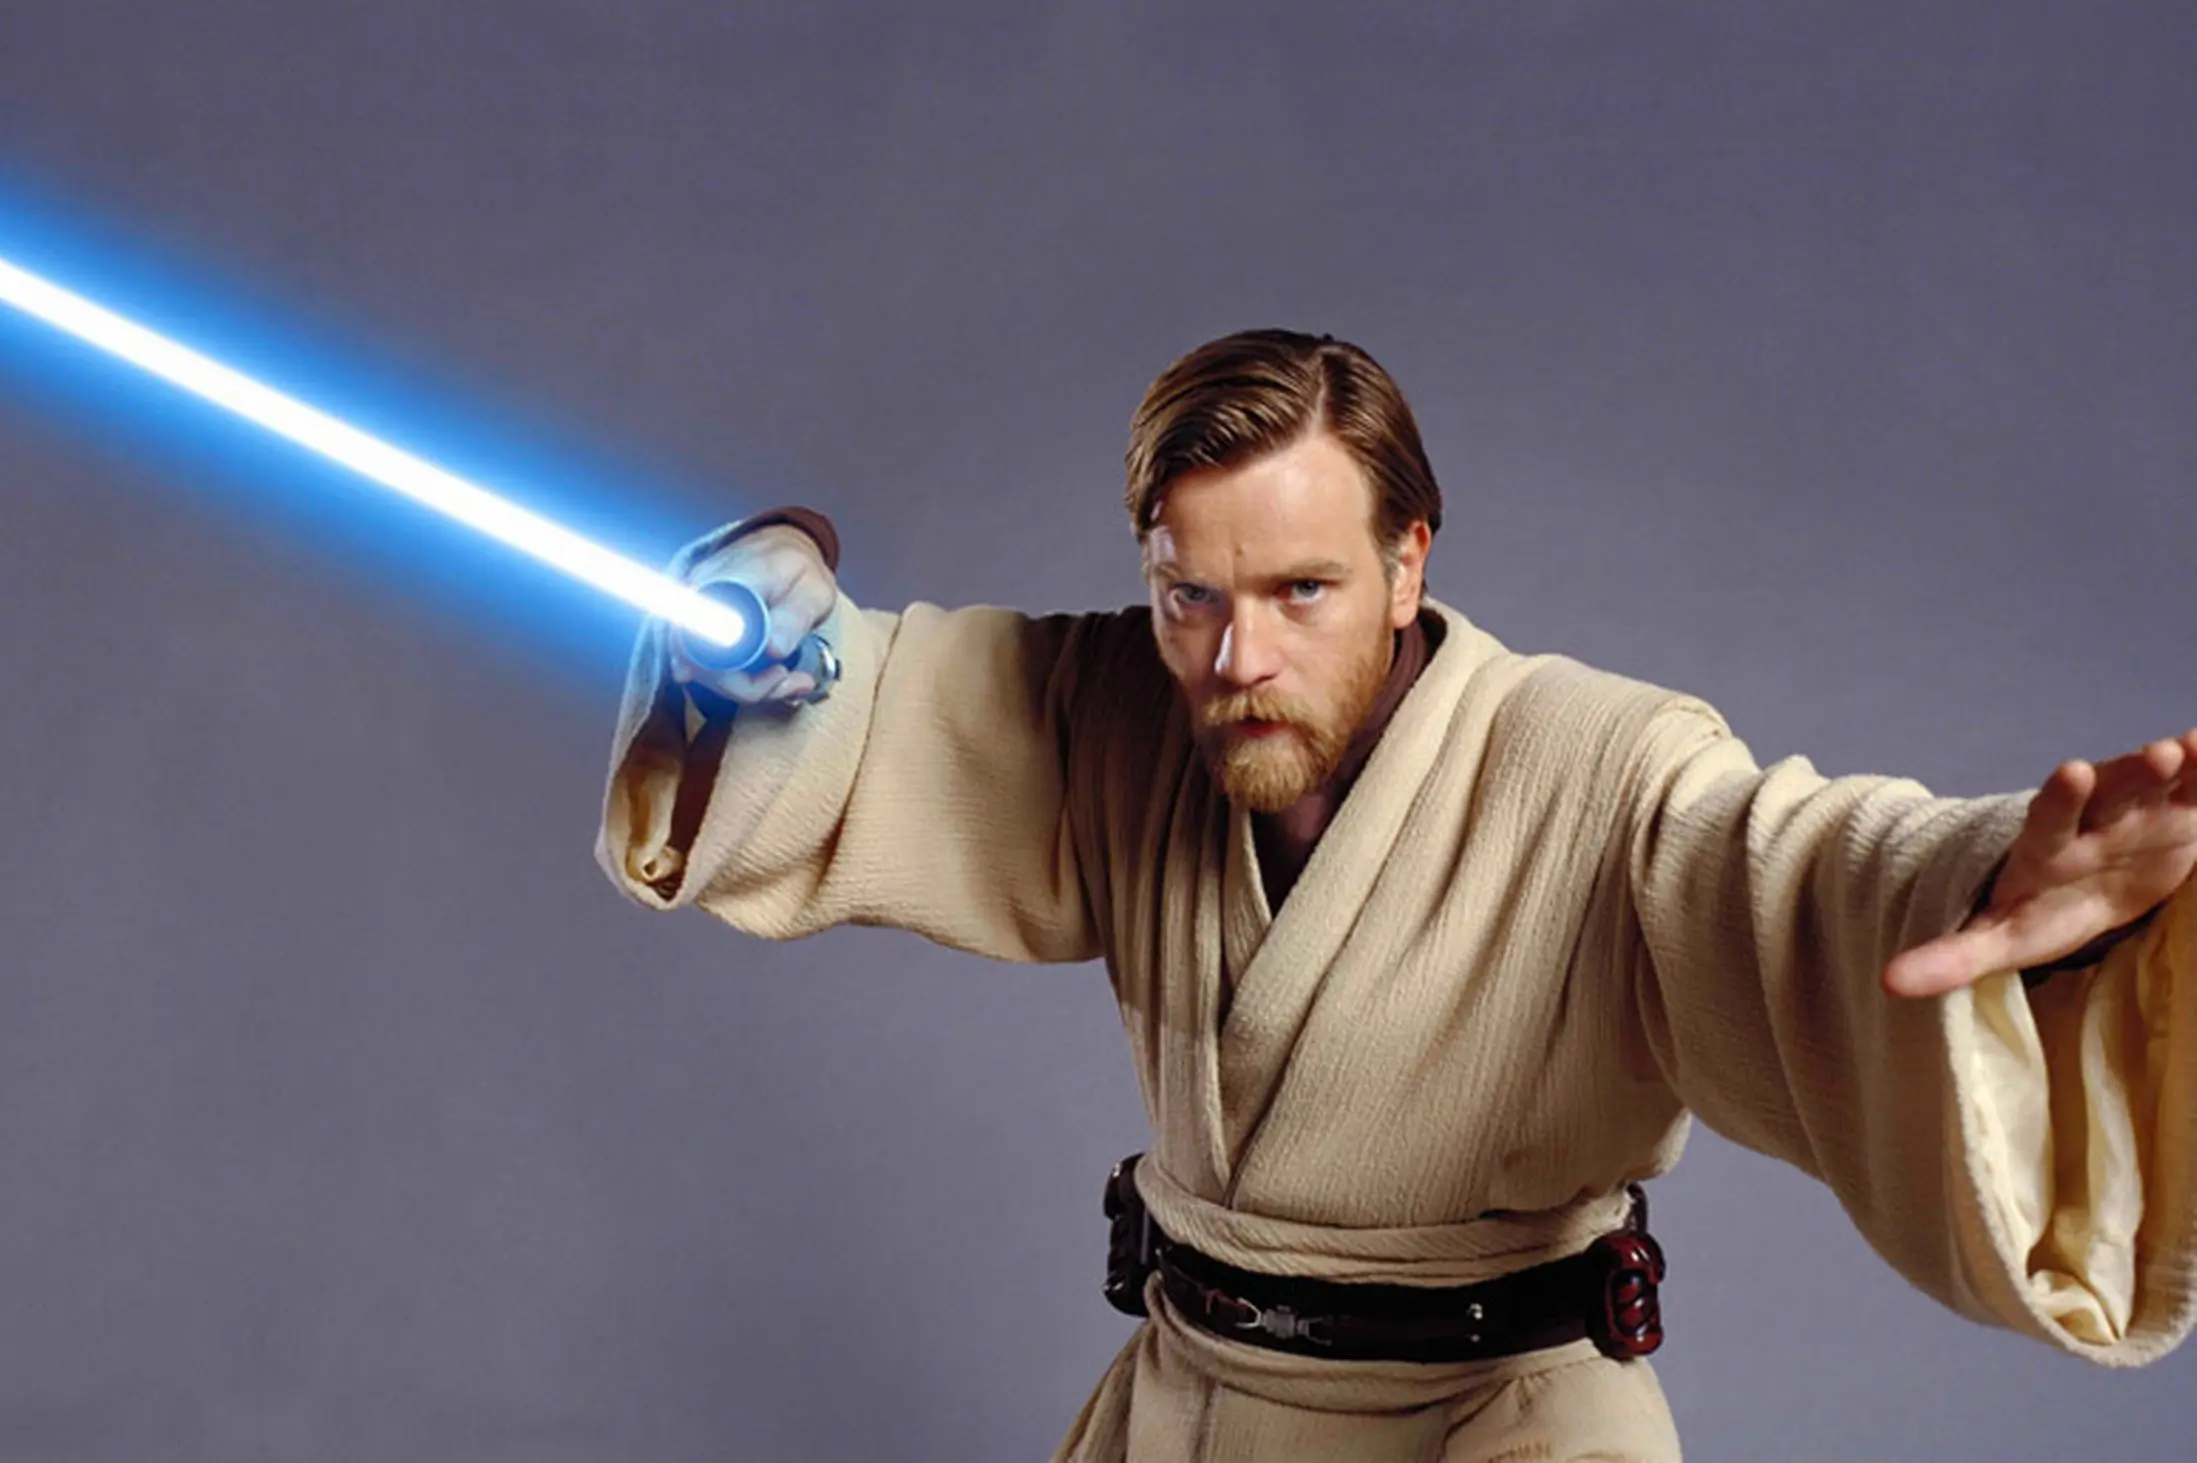 Film solo Obi-Wan Kenobi akan dijadikan sebuah trilogi Star Wars tersendiri dengan Ewan McGregor kembali memerankannya.